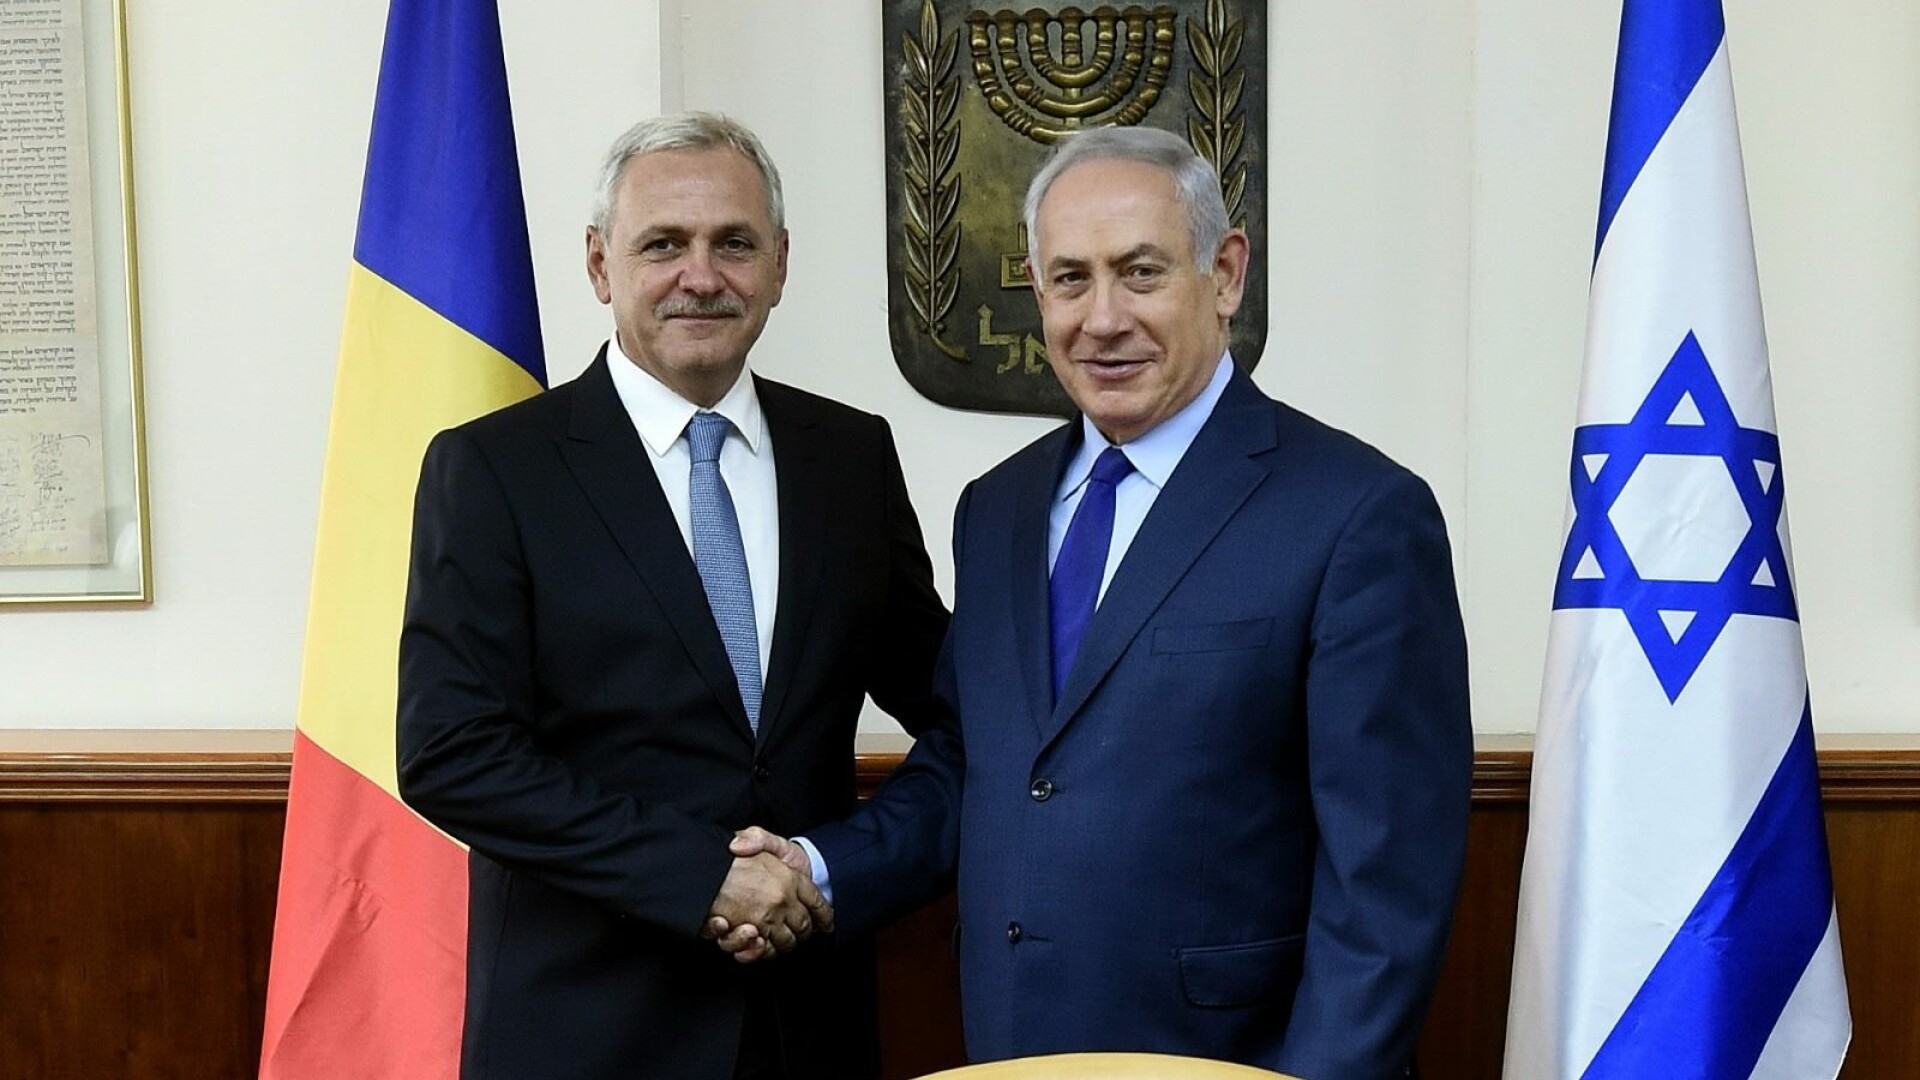 Liviu Dragnea s-a intalnit in Israel cu premierul Benjamin Netanyahu